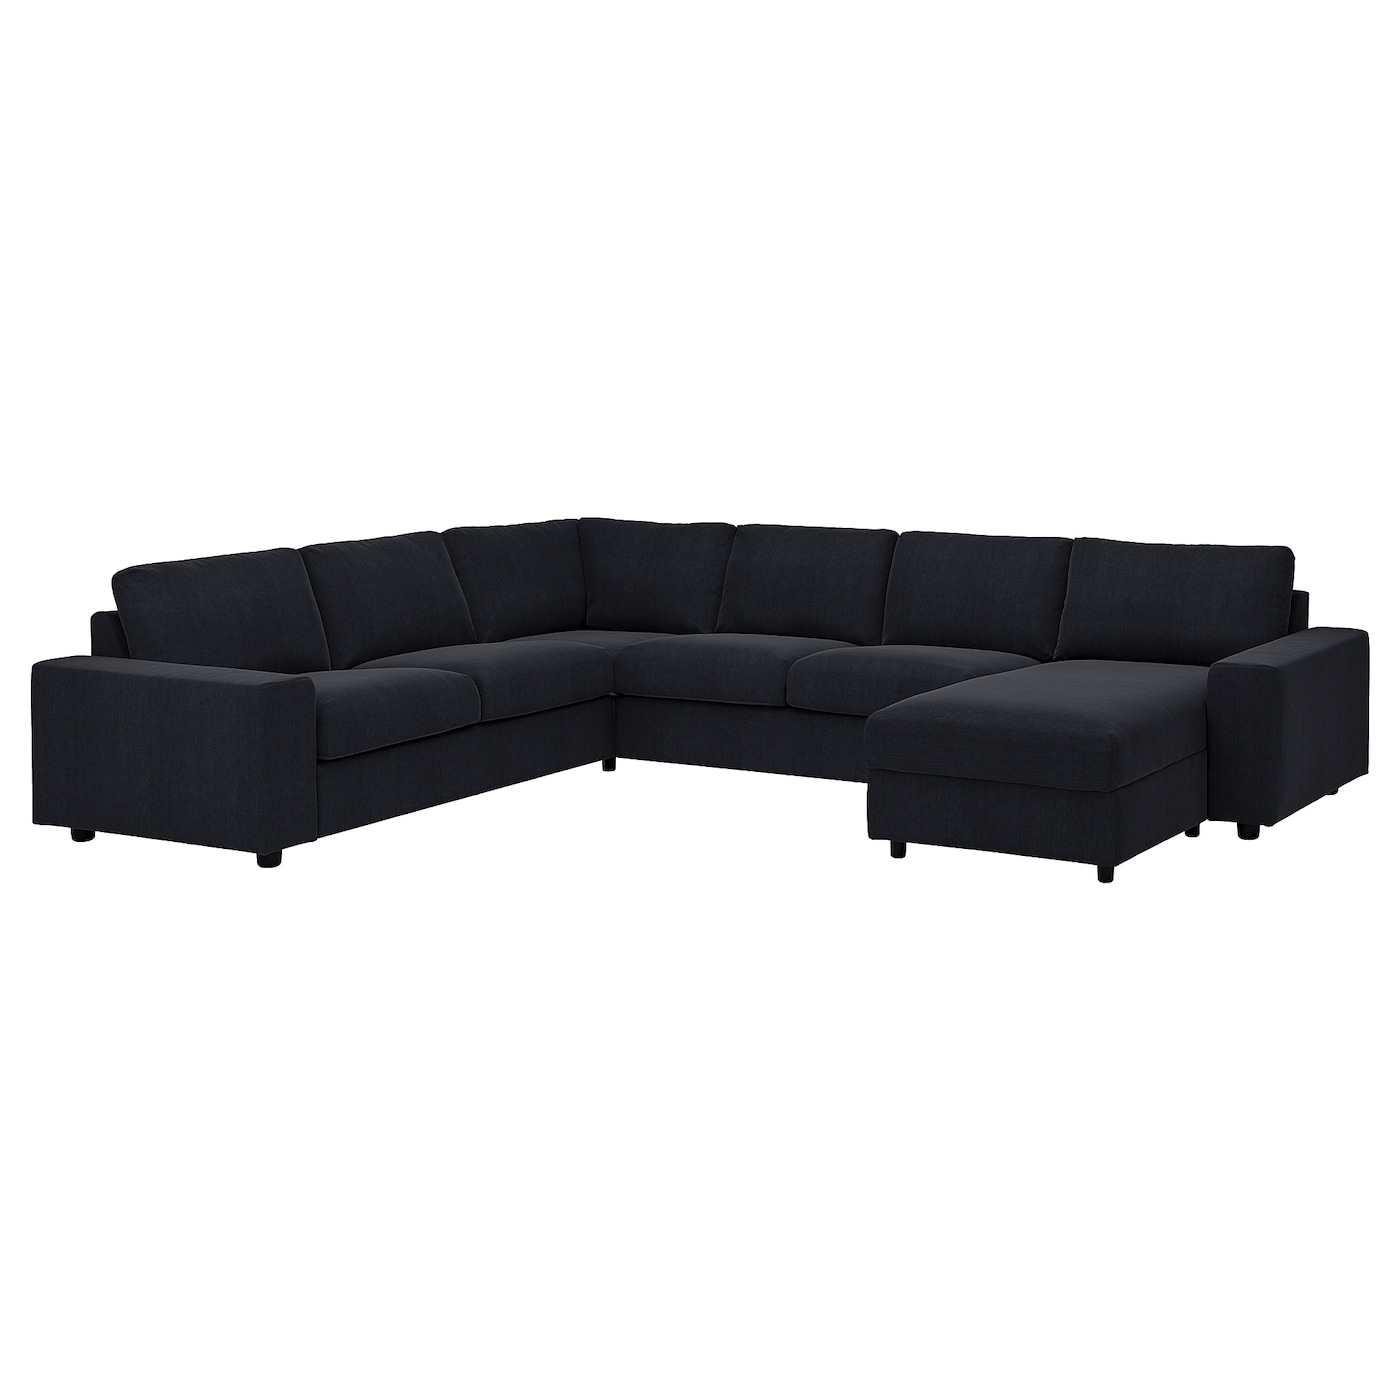 ВИМЛЕ Диван угловой, 5-местный. диван+диван, с широкими подлокотниками/Saxemara черно-синий VIMLE IKEA диван угловой баден next с подлокотниками